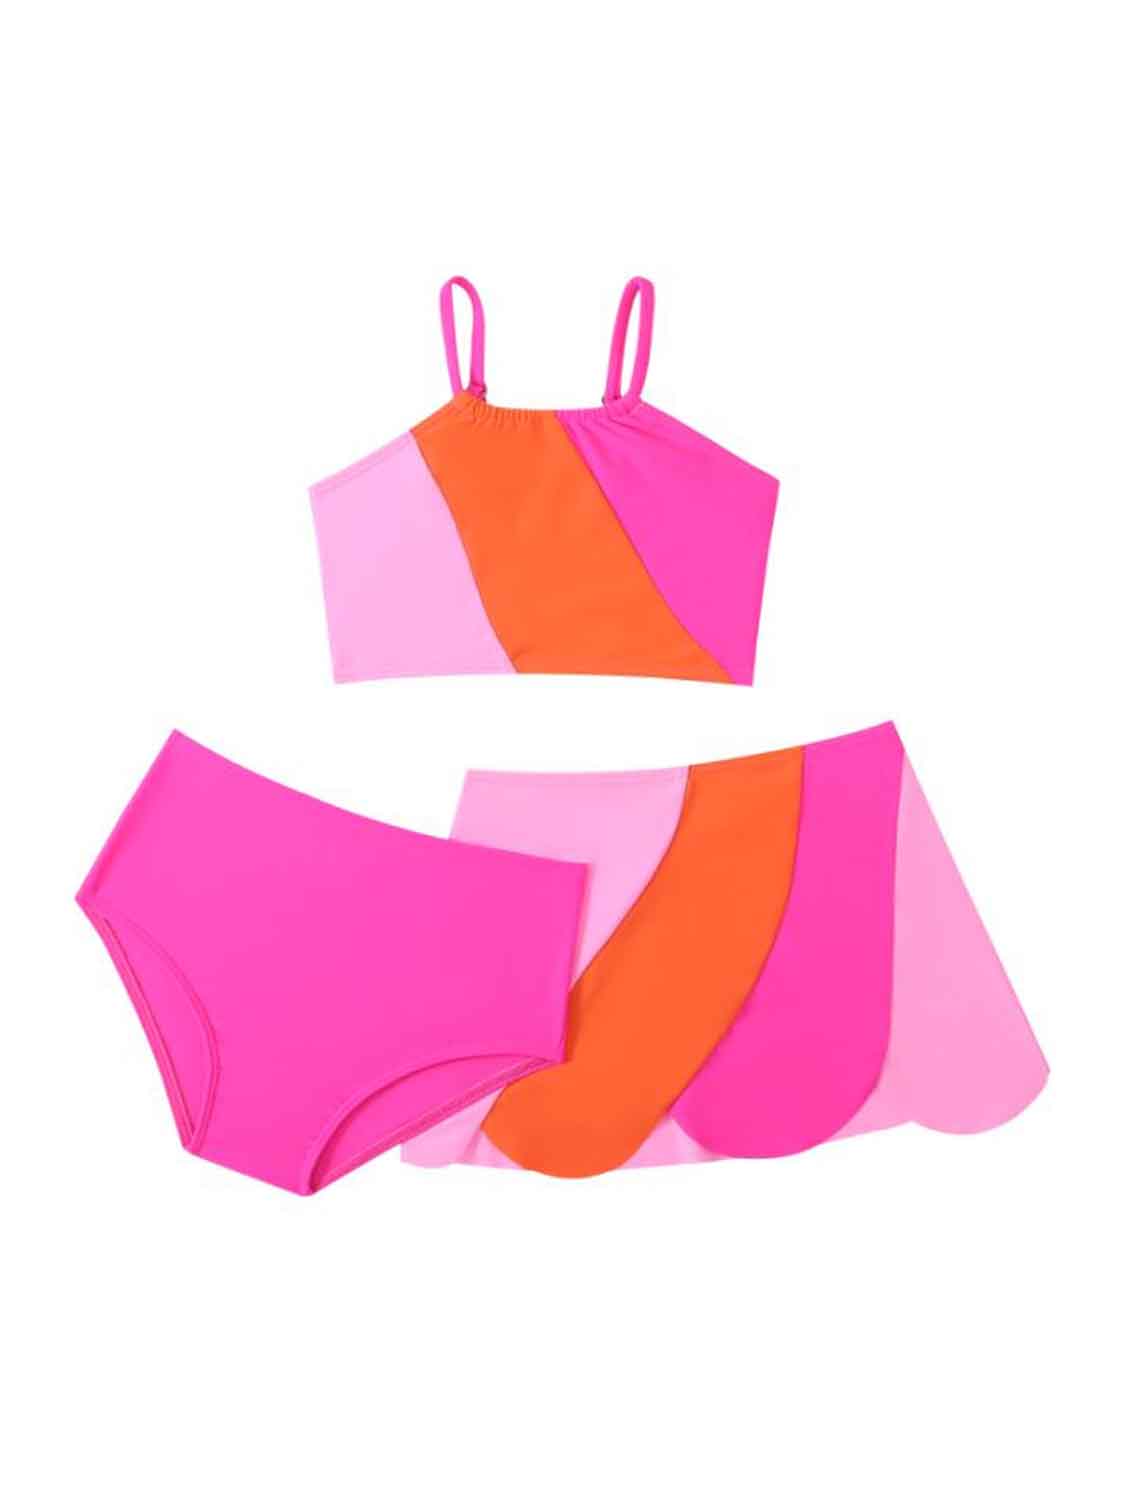 KRE Prime Girls Color Block Top, Brief and Skirt Swim Set - KRE Prime